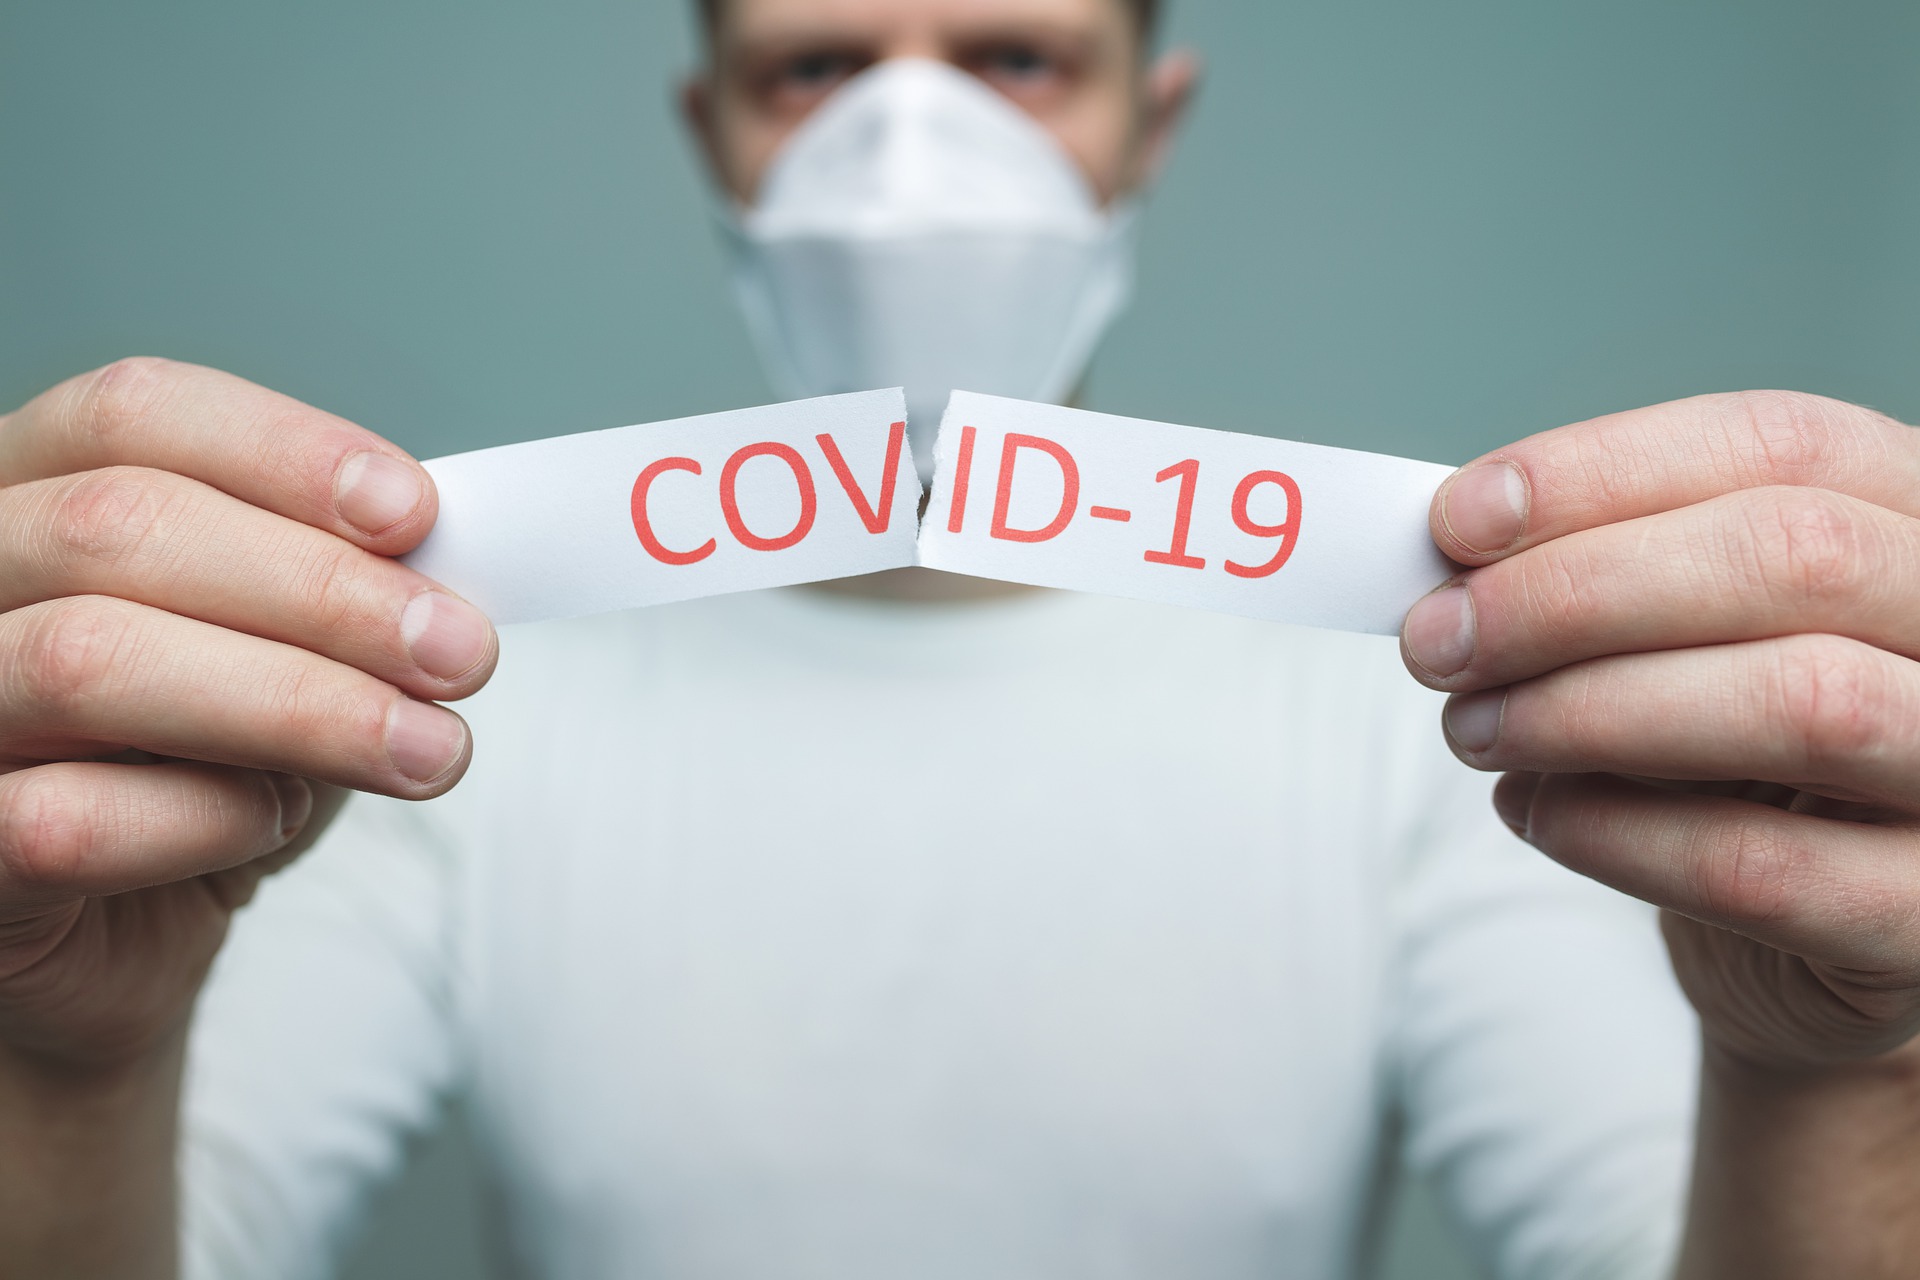 10 случаев заражения COVID-19 зафиксировали в Смоленской области